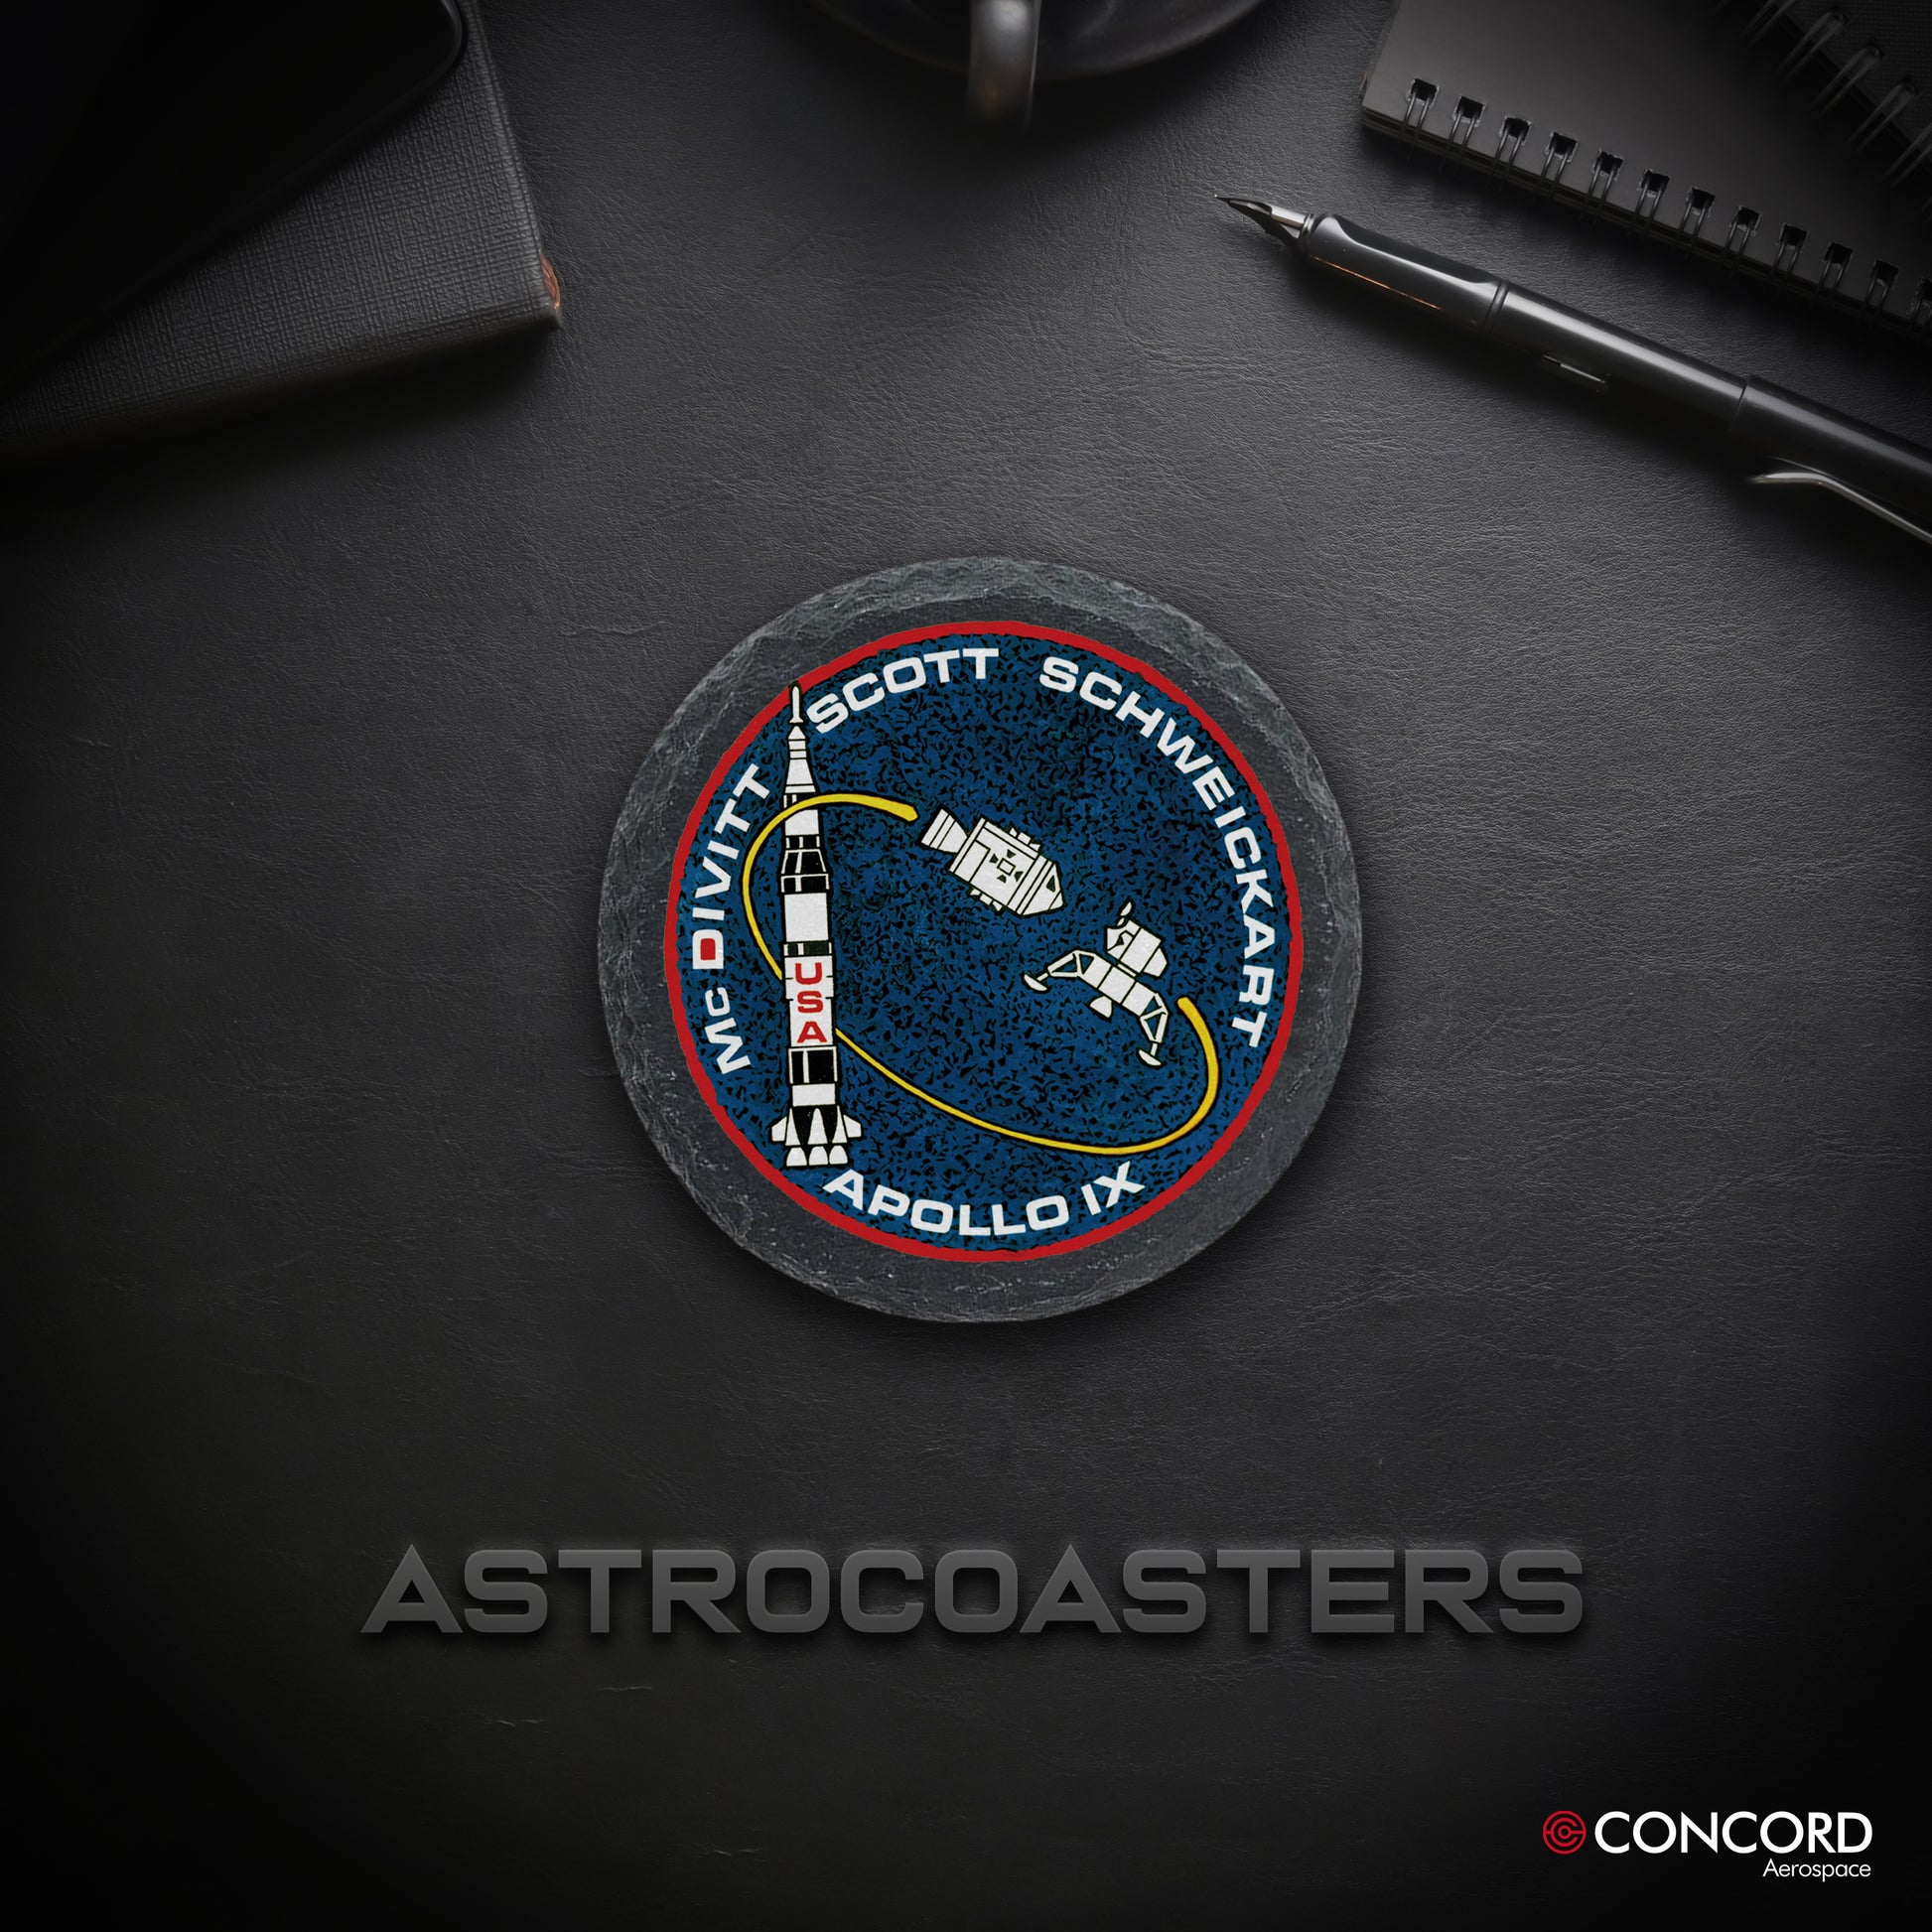 APOLLO 9 MISSION - SLATE COASTER - Concord Aerospace Concord Aerospace Concord Aerospace Coasters